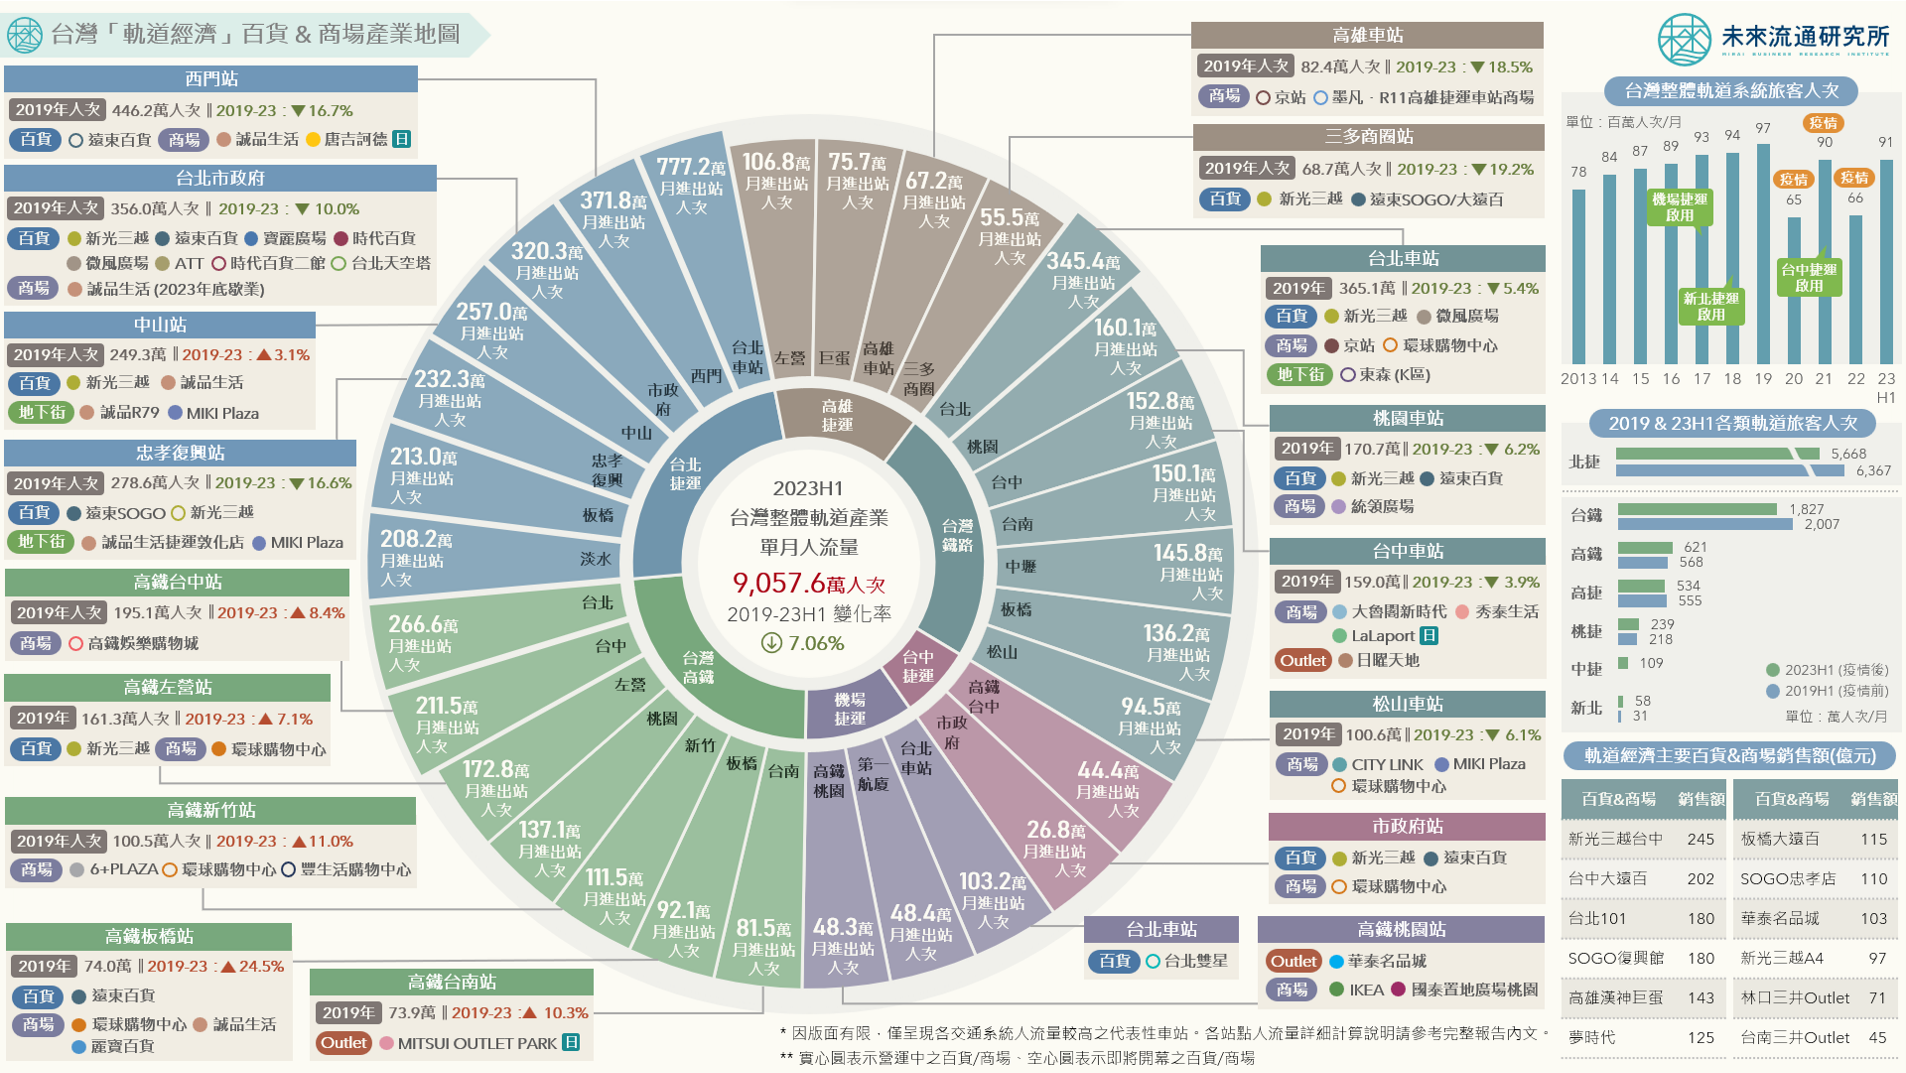 台灣「軌道經濟」百貨與商場產業地圖